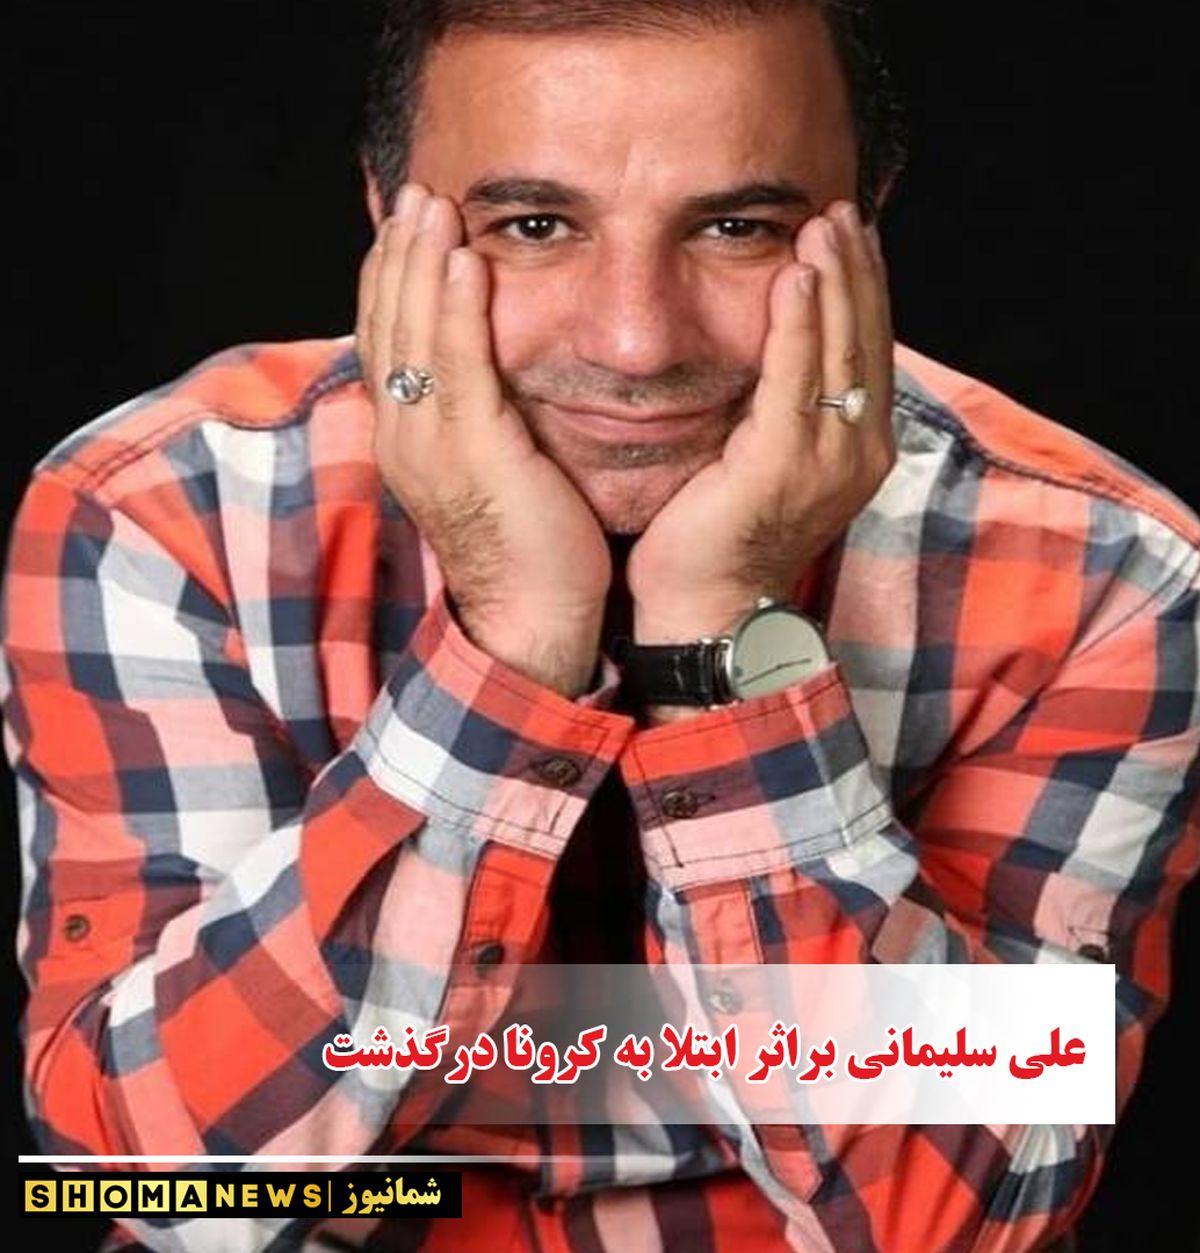  علی سلیمانی درگذشت + علت فوت علی سلیمانی و تصاویر علی سلیمانی و همسر و دخترش